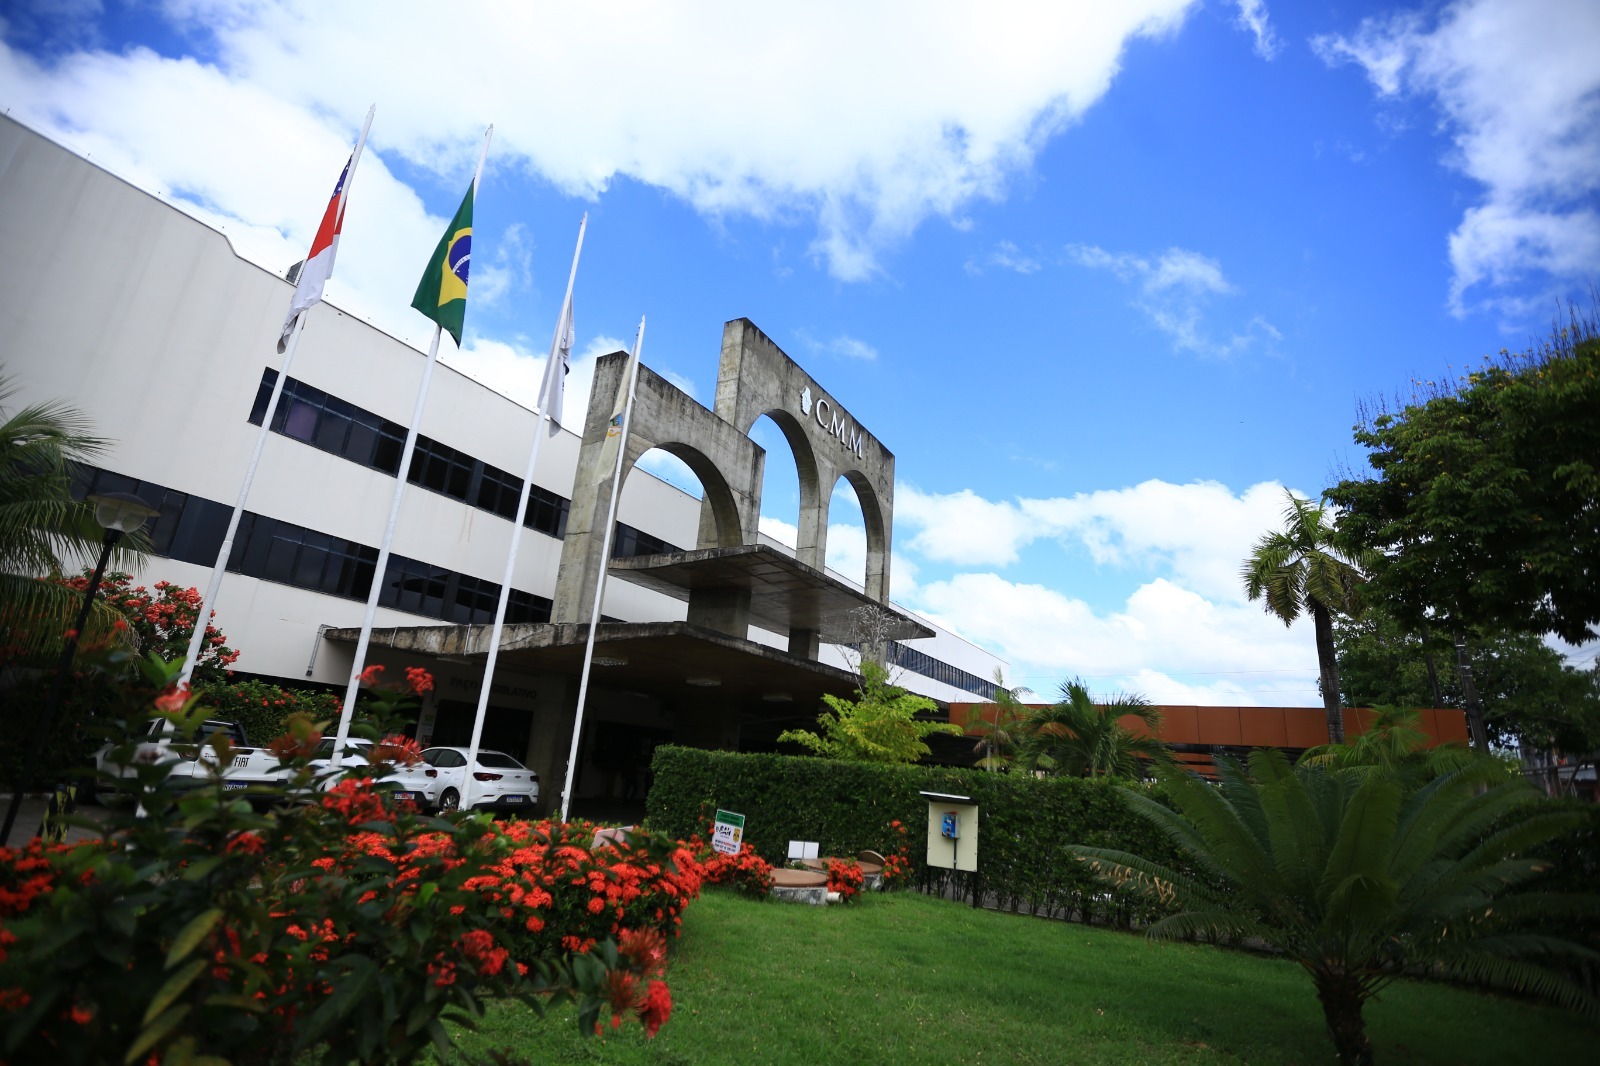 Câmara Municipal de Manaus celebra 190 anos de história com atuação mais próxima da população manauara